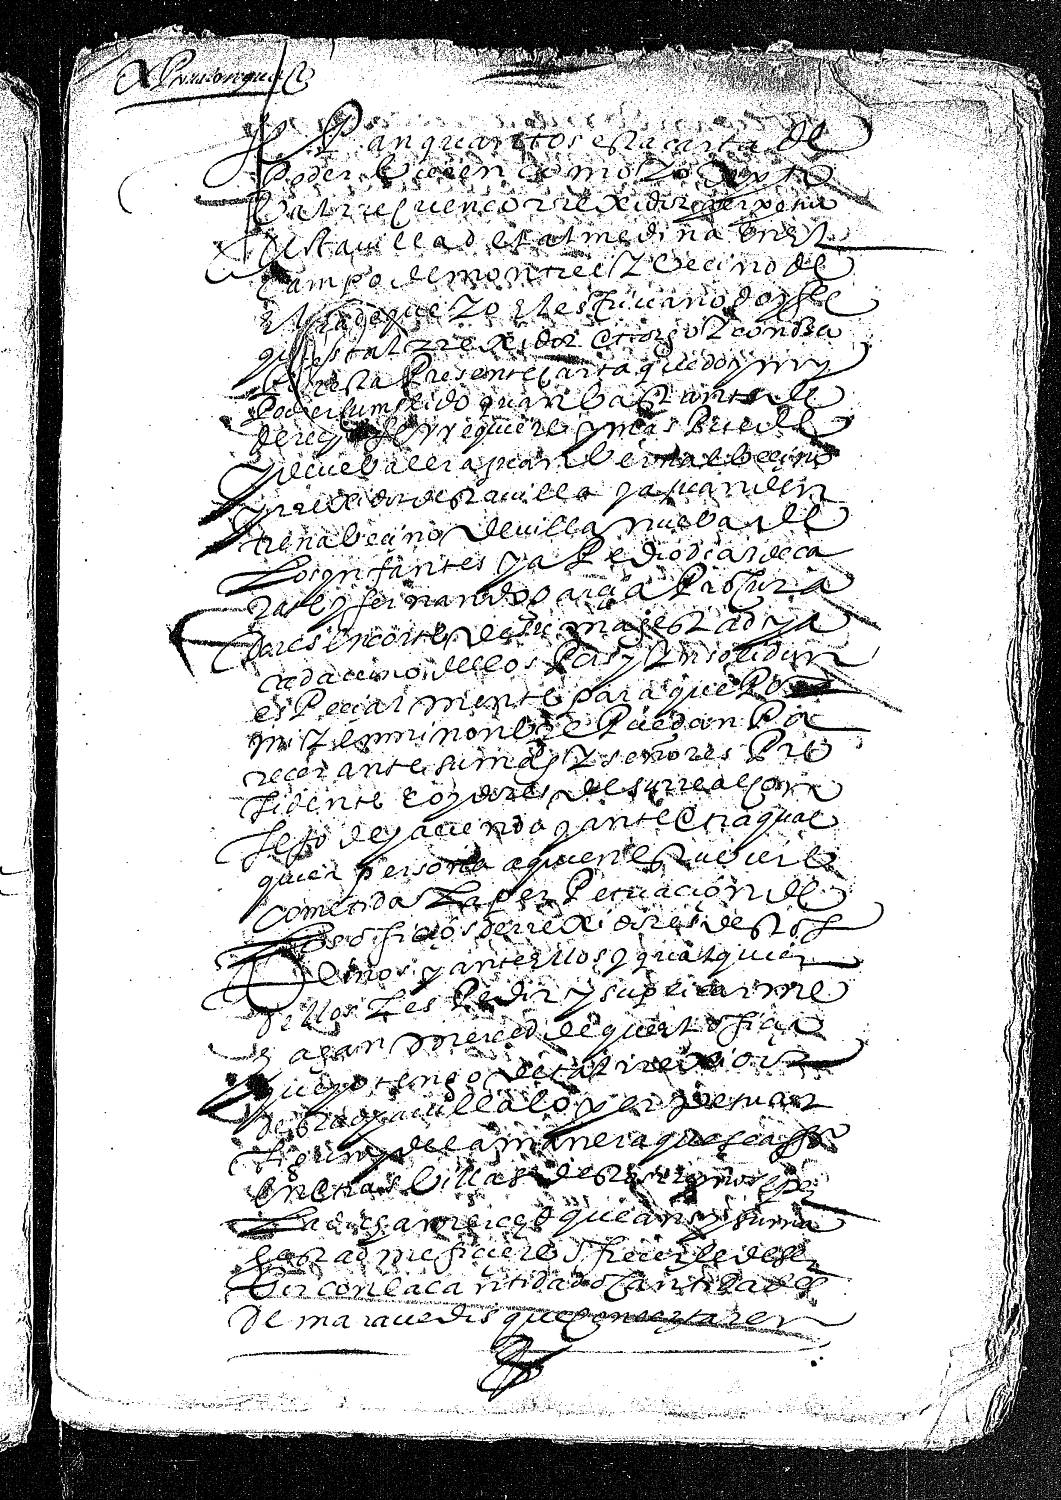 Carta de poder de Cristóbal Recuenco dada a Juan Bernal Sánchez, Juan de Entrena, Pedro de Azcárate y Fernando García para que le consigan la perpetuación de su oficio de regidor de Almedina.